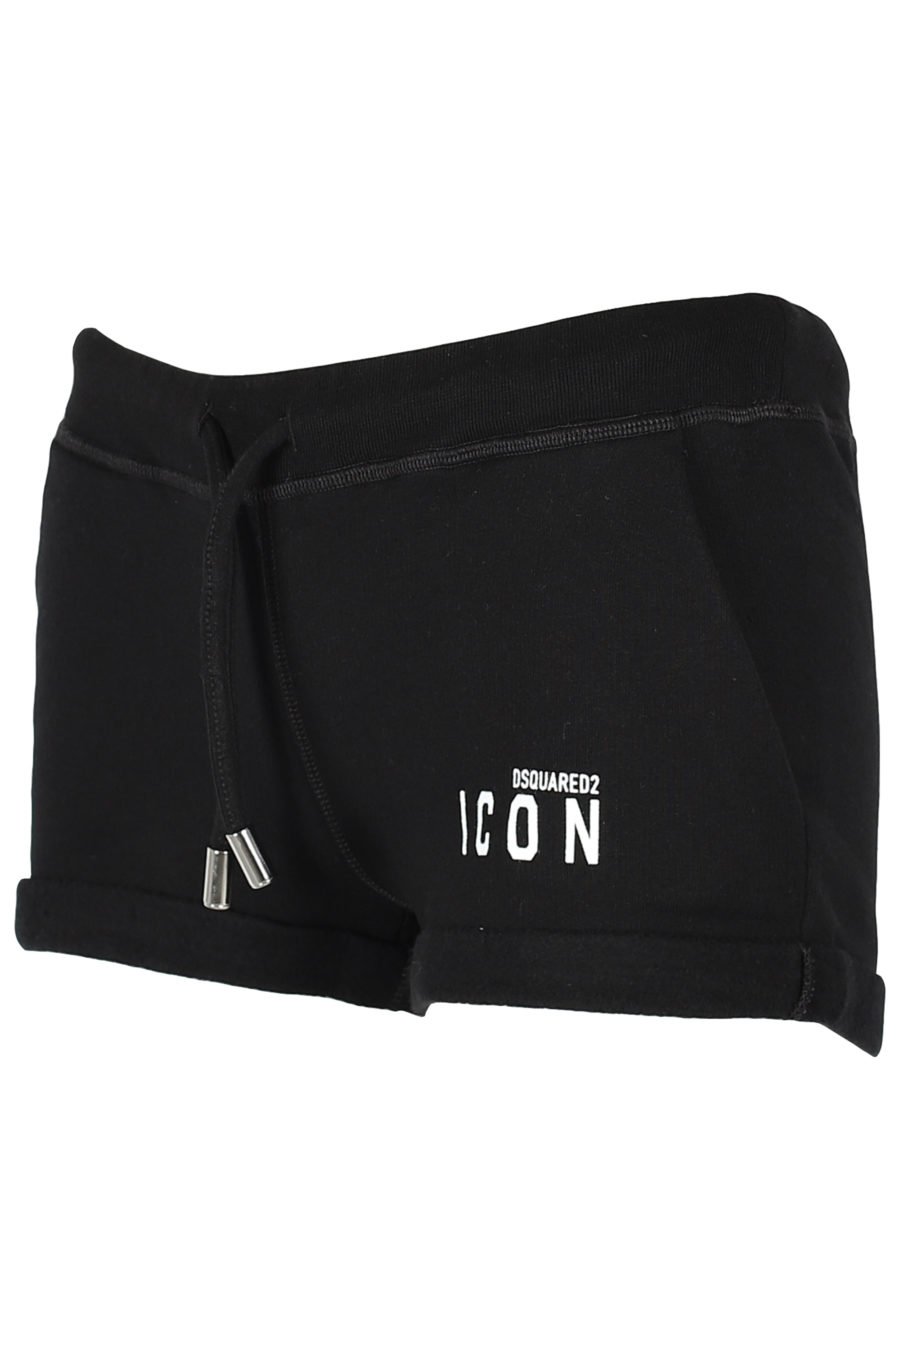 Pantalón de chándal negro corto "Icon" - IMG 3236